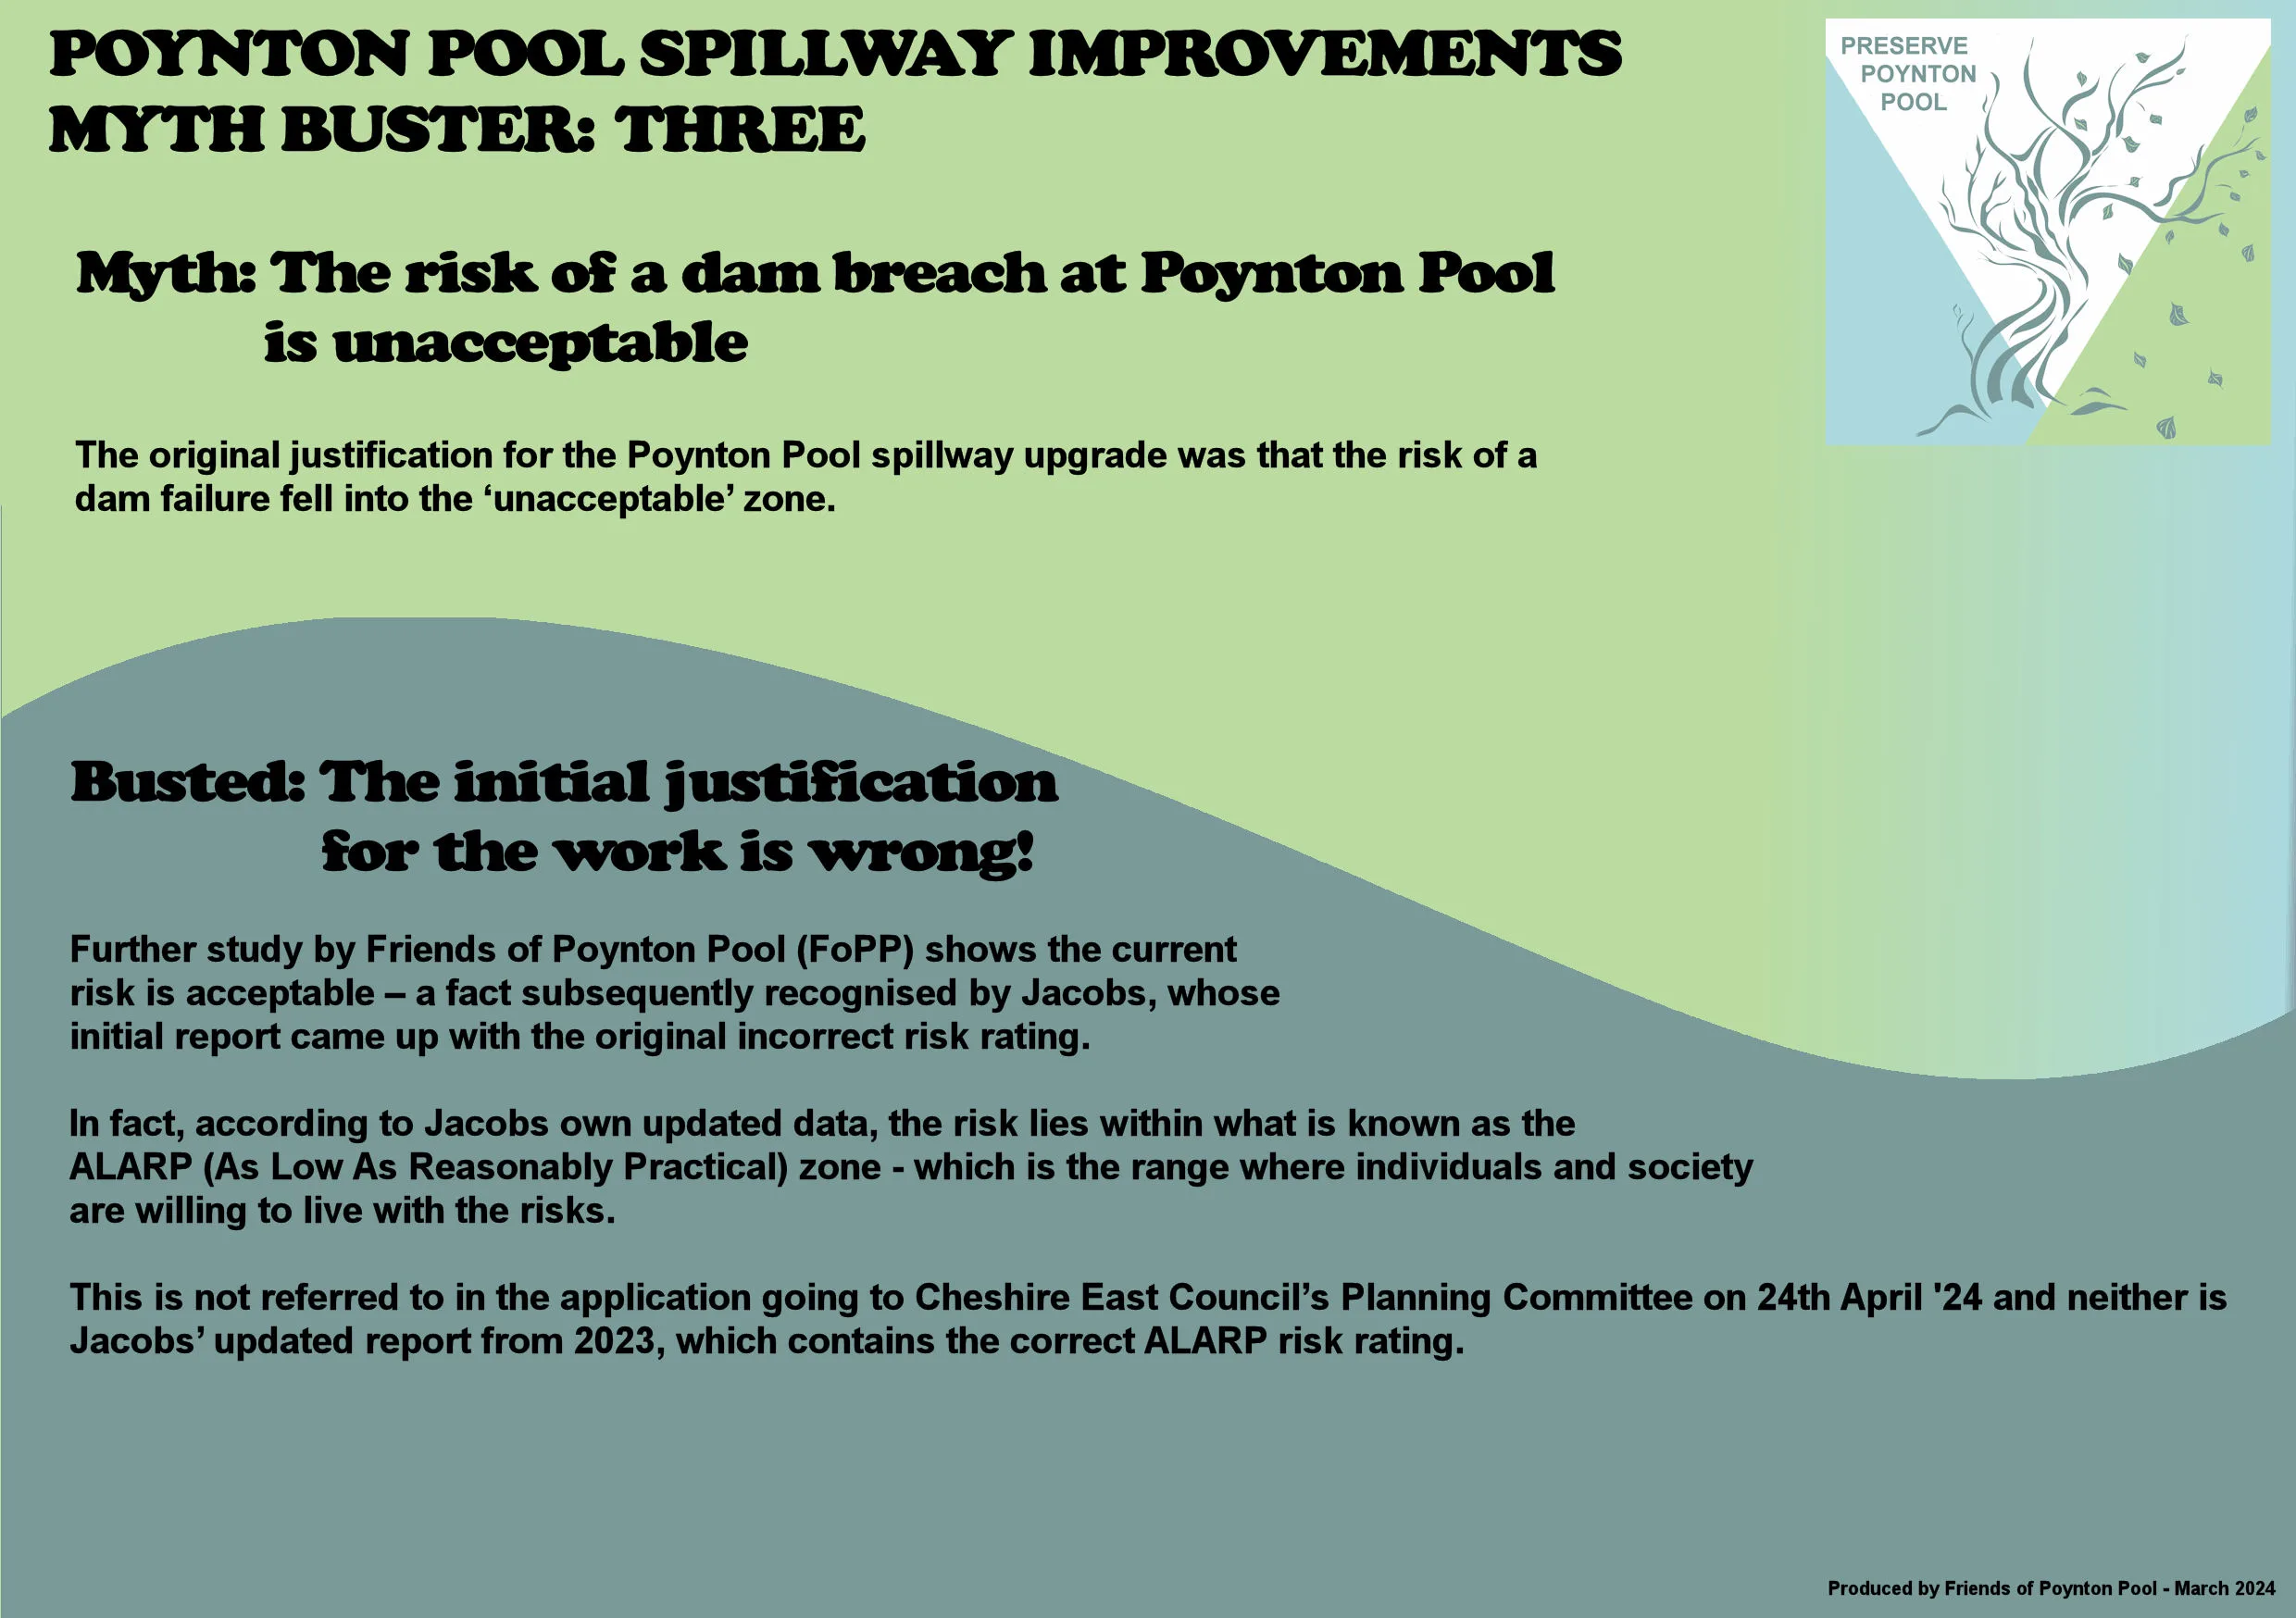 Myth Three: The risk of a dam breach at Poynton Pool is unacceptable